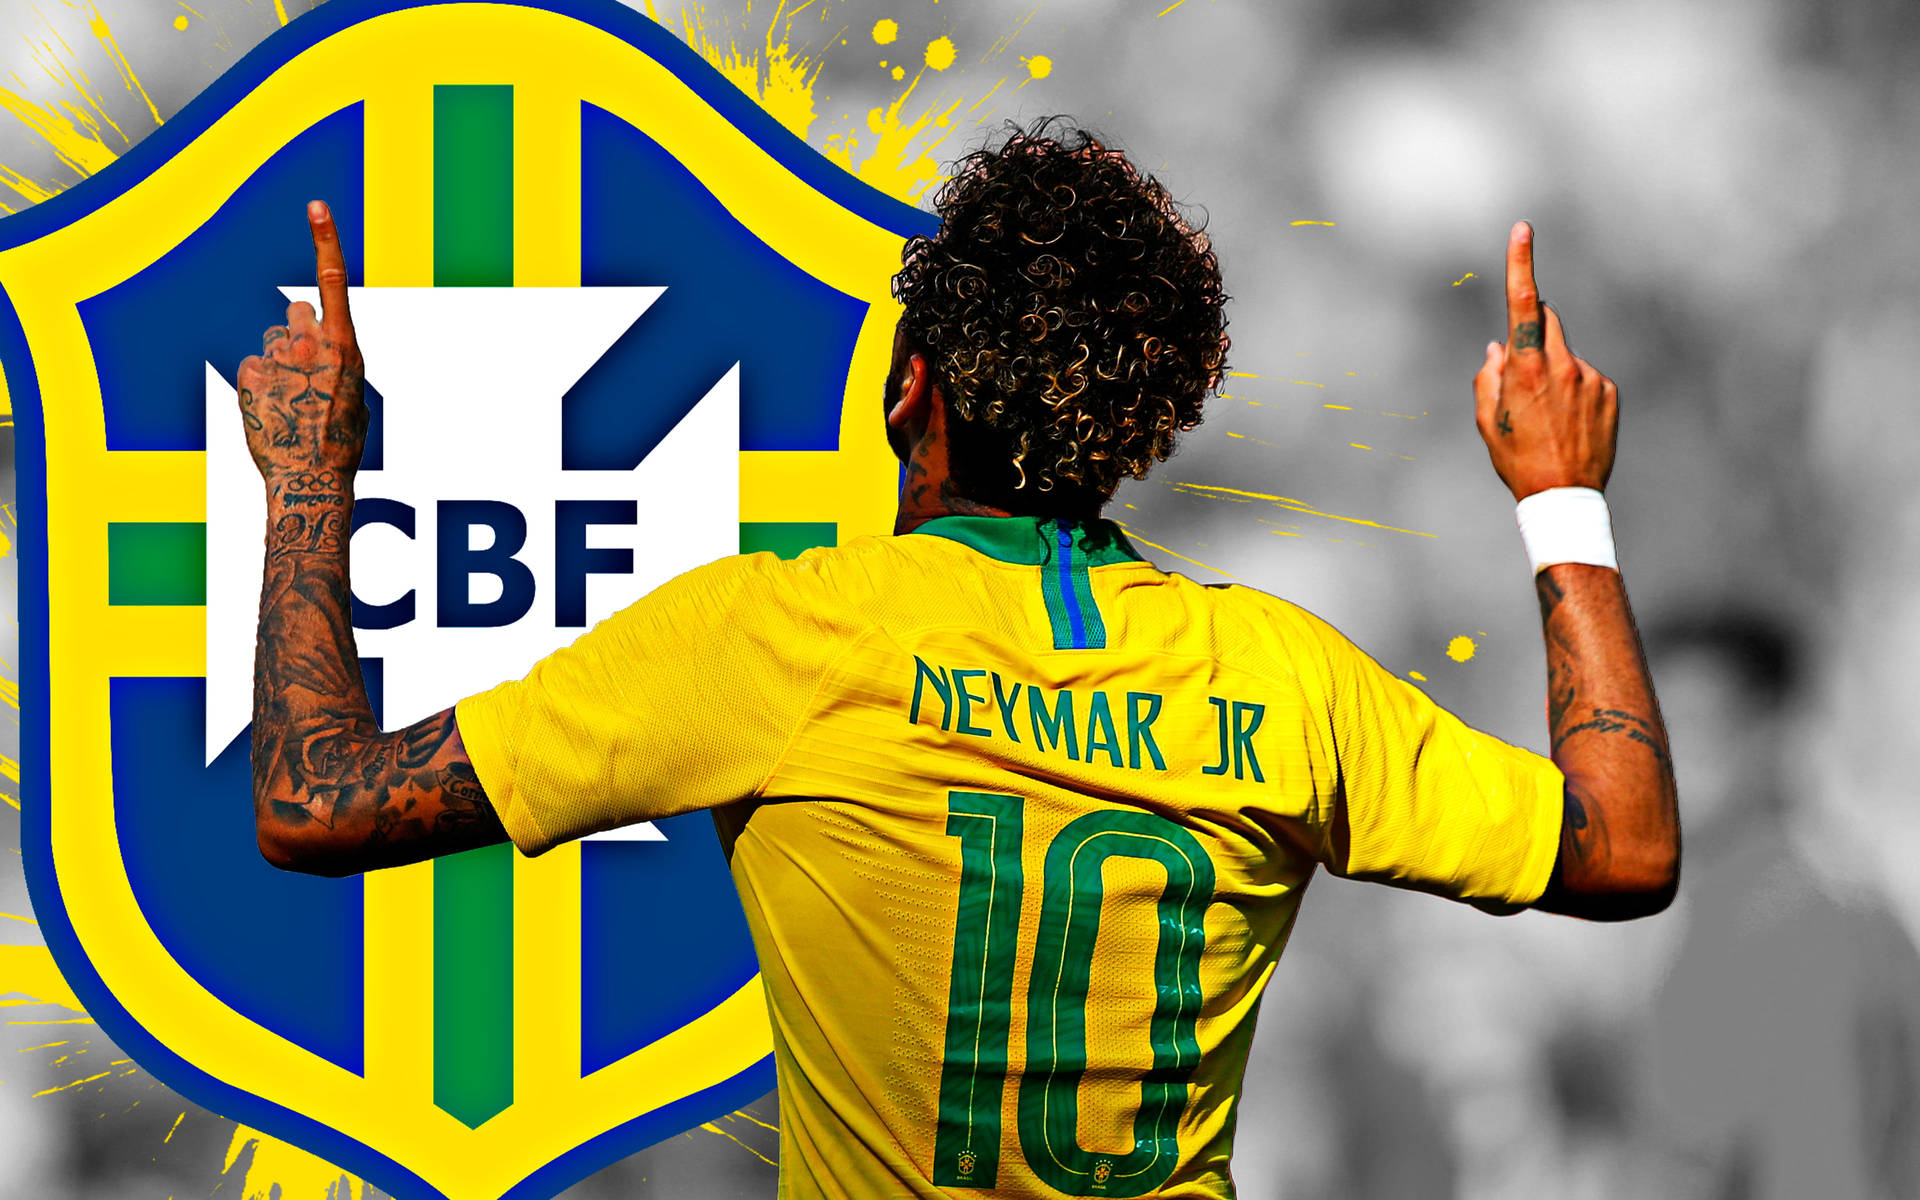 Neymar 4k With Big Cbf Logo Background